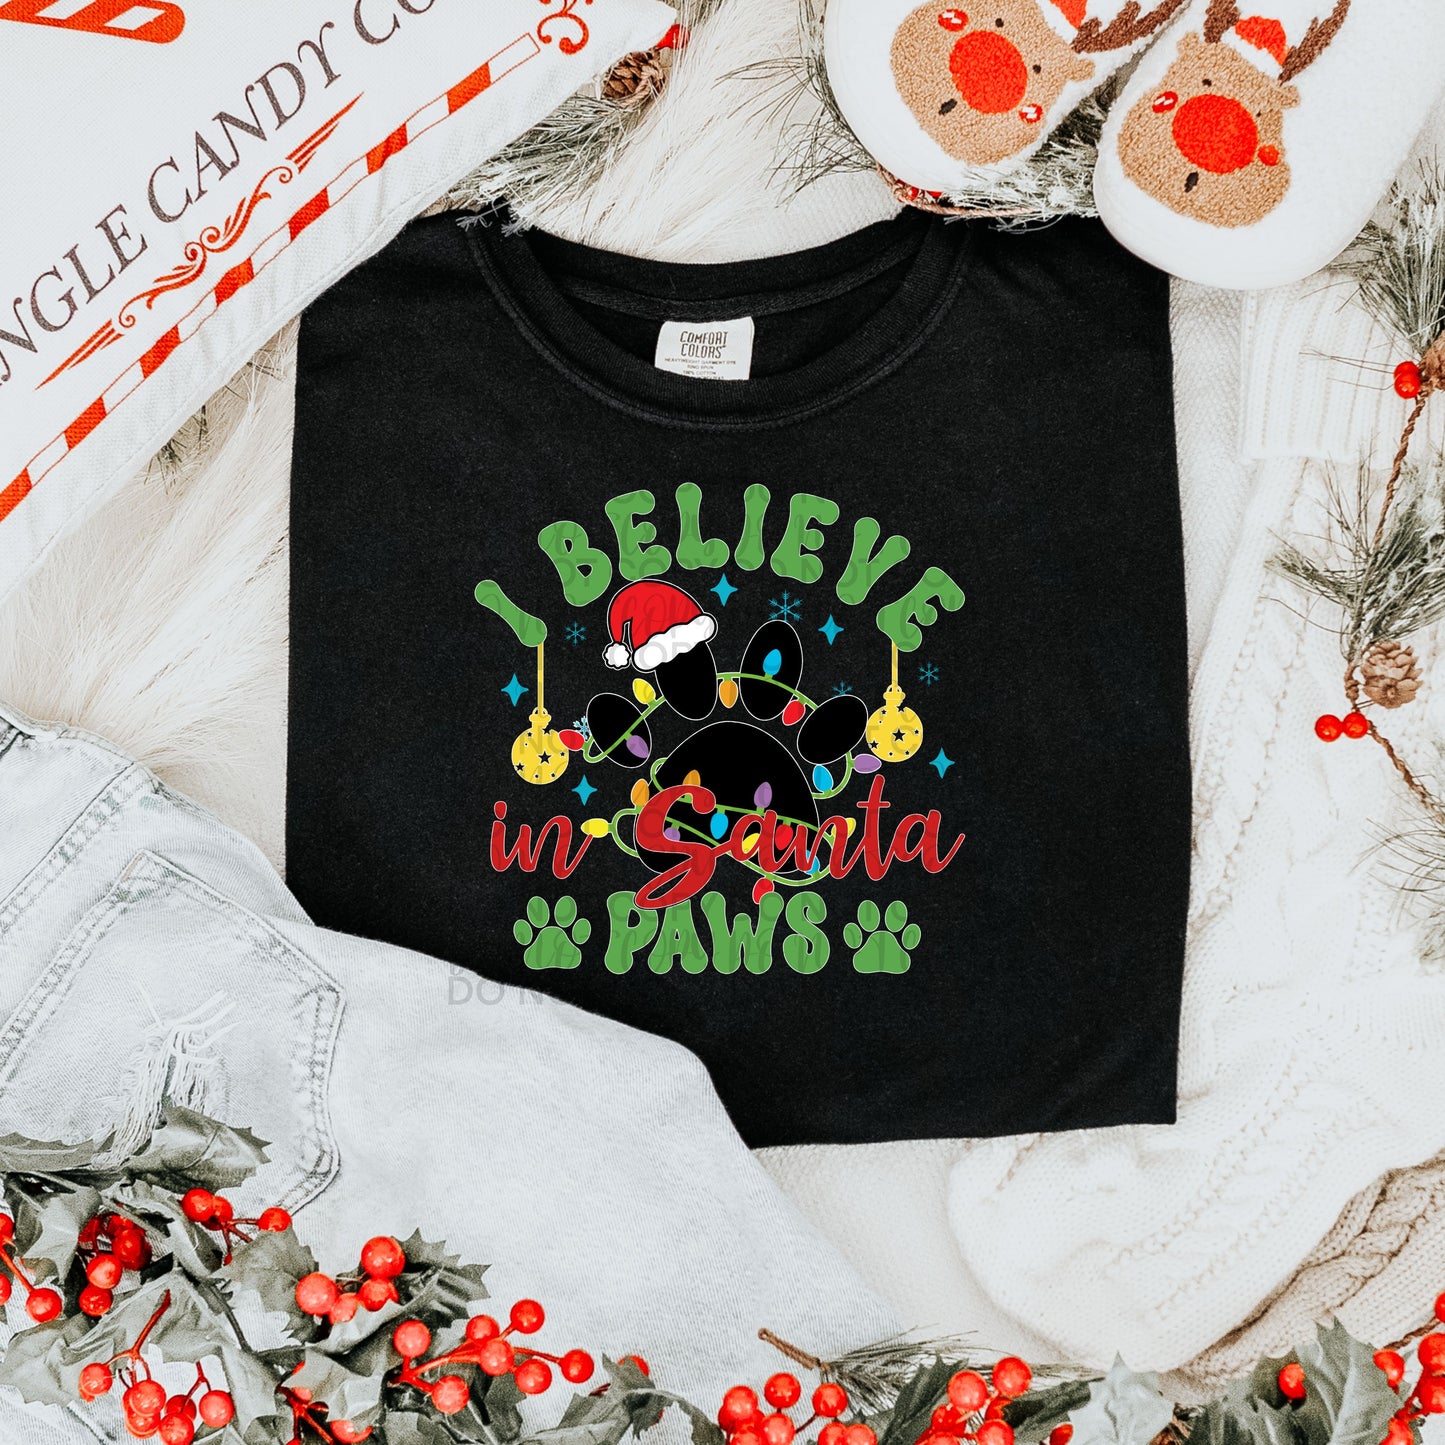 I believe in Santa Paws